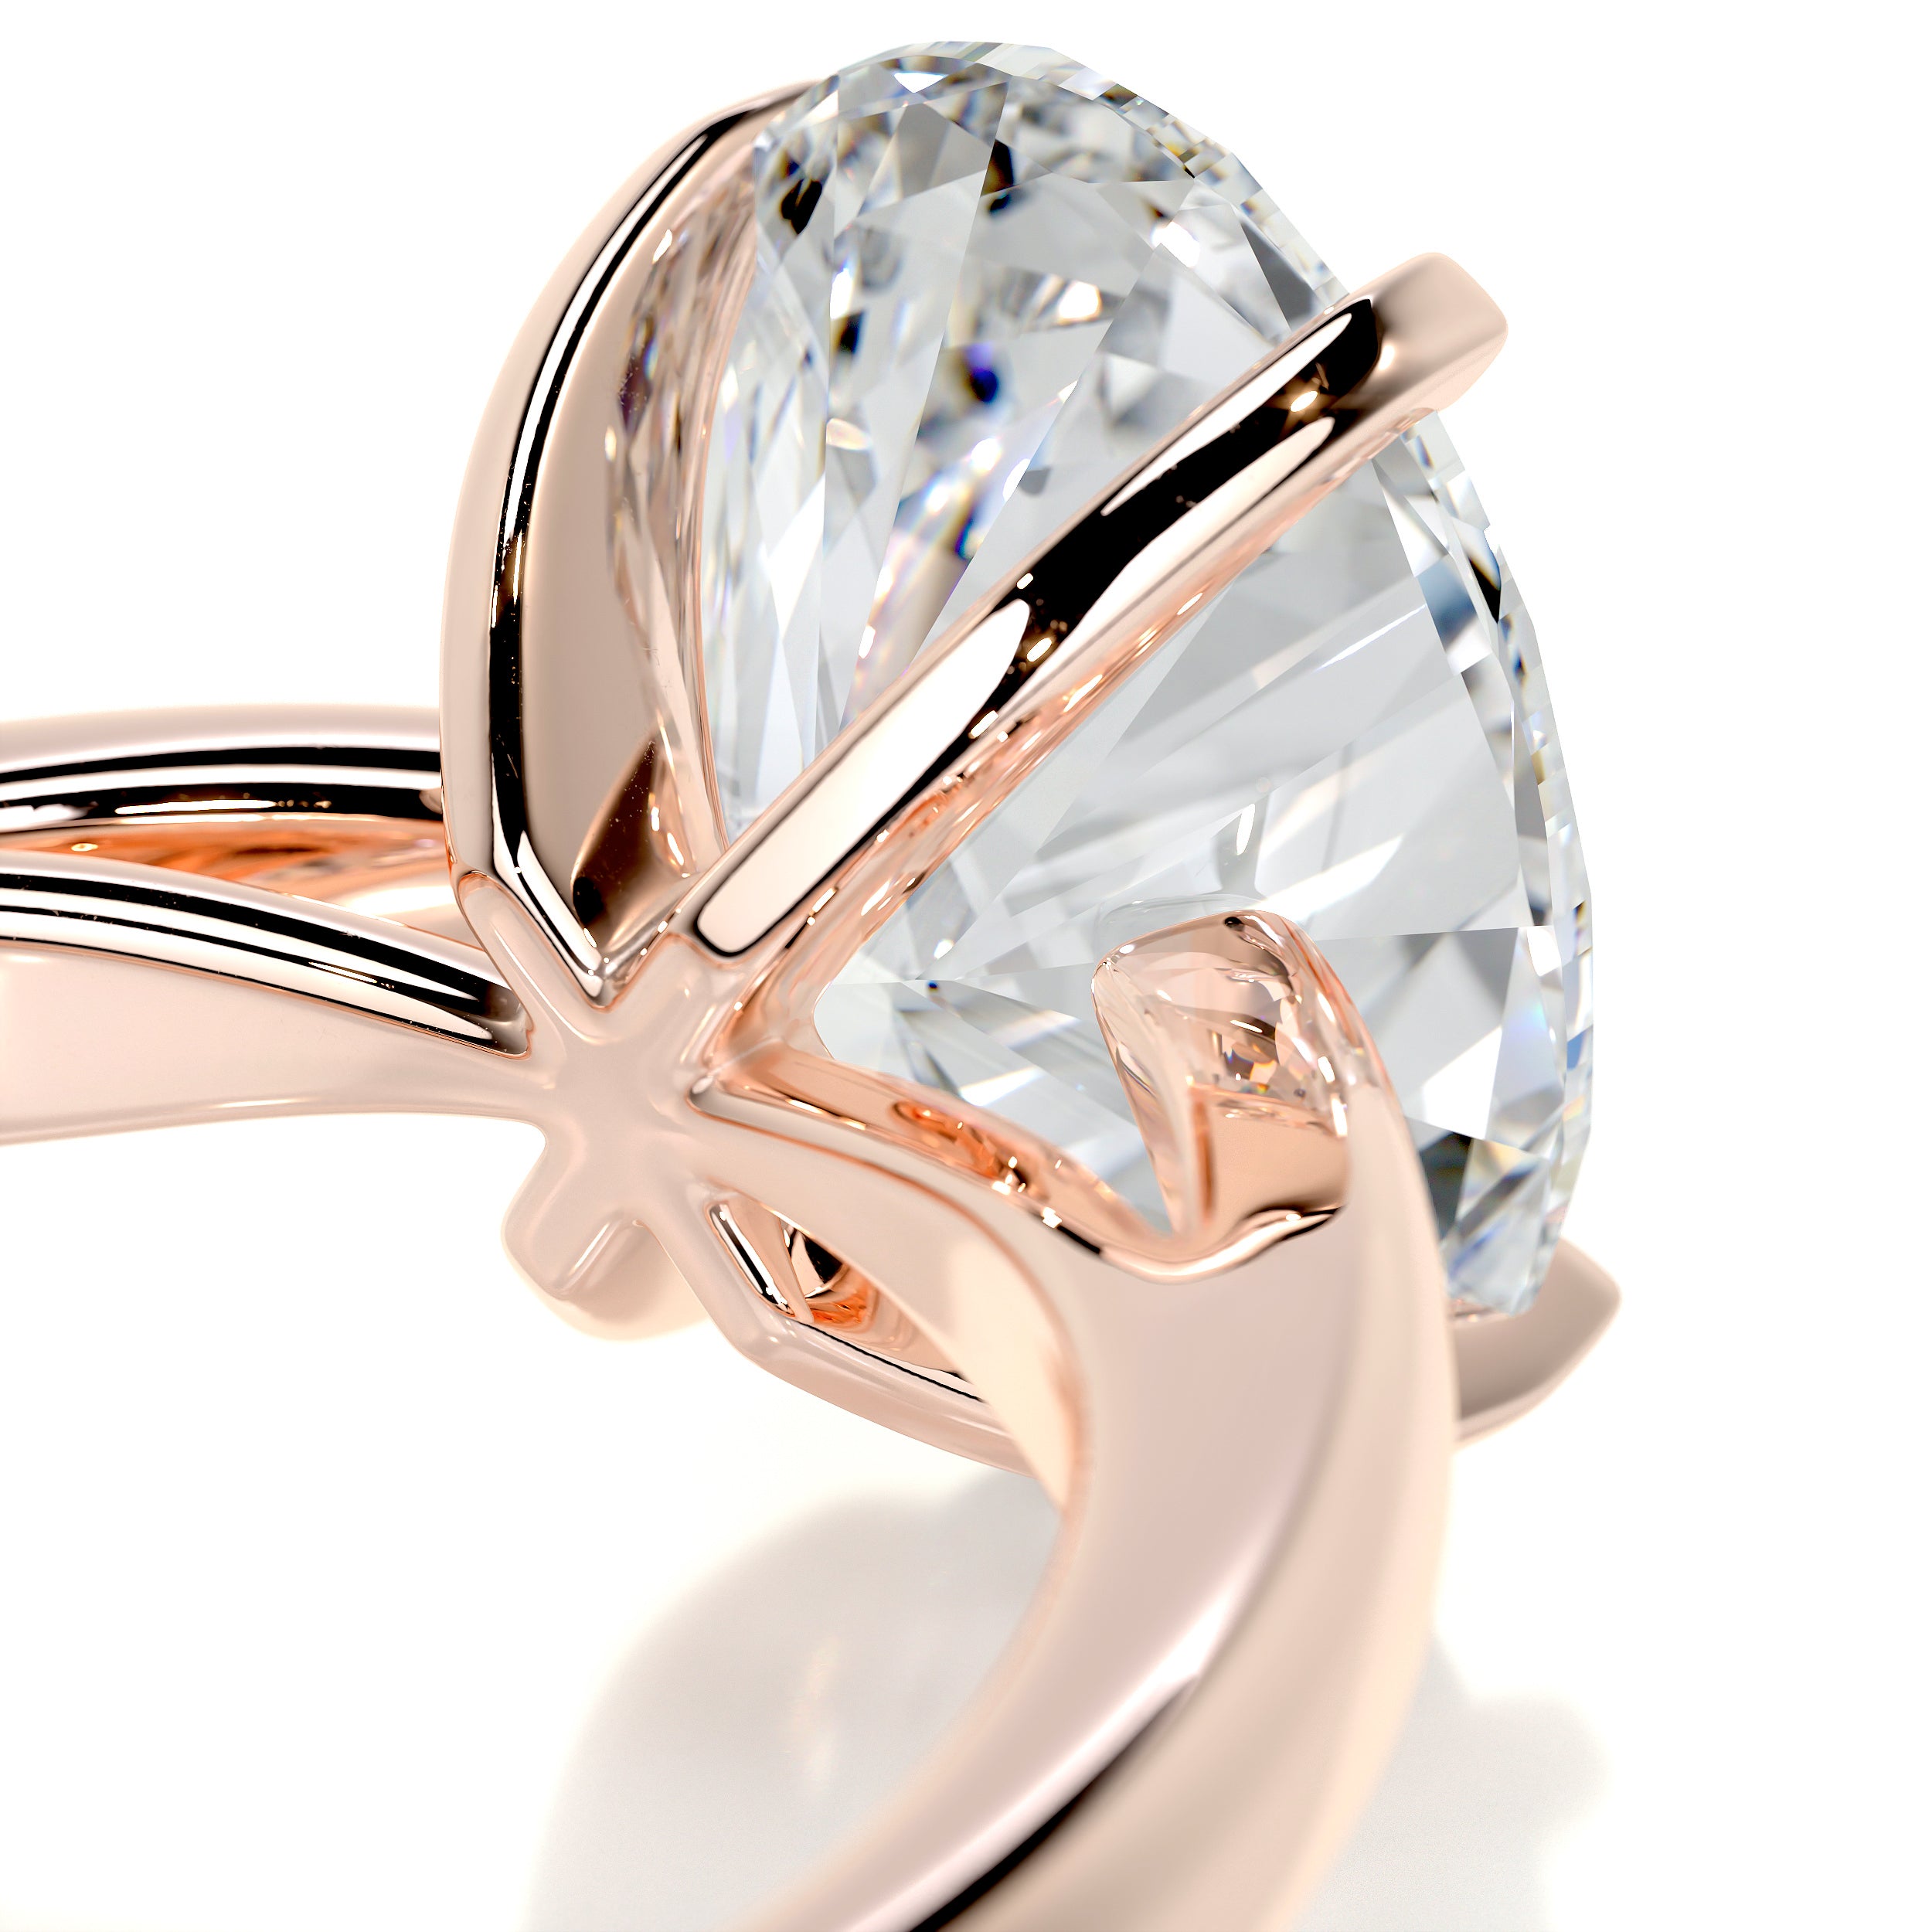 Diana Diamond Engagement Ring   (2 Carat) -14K Rose Gold